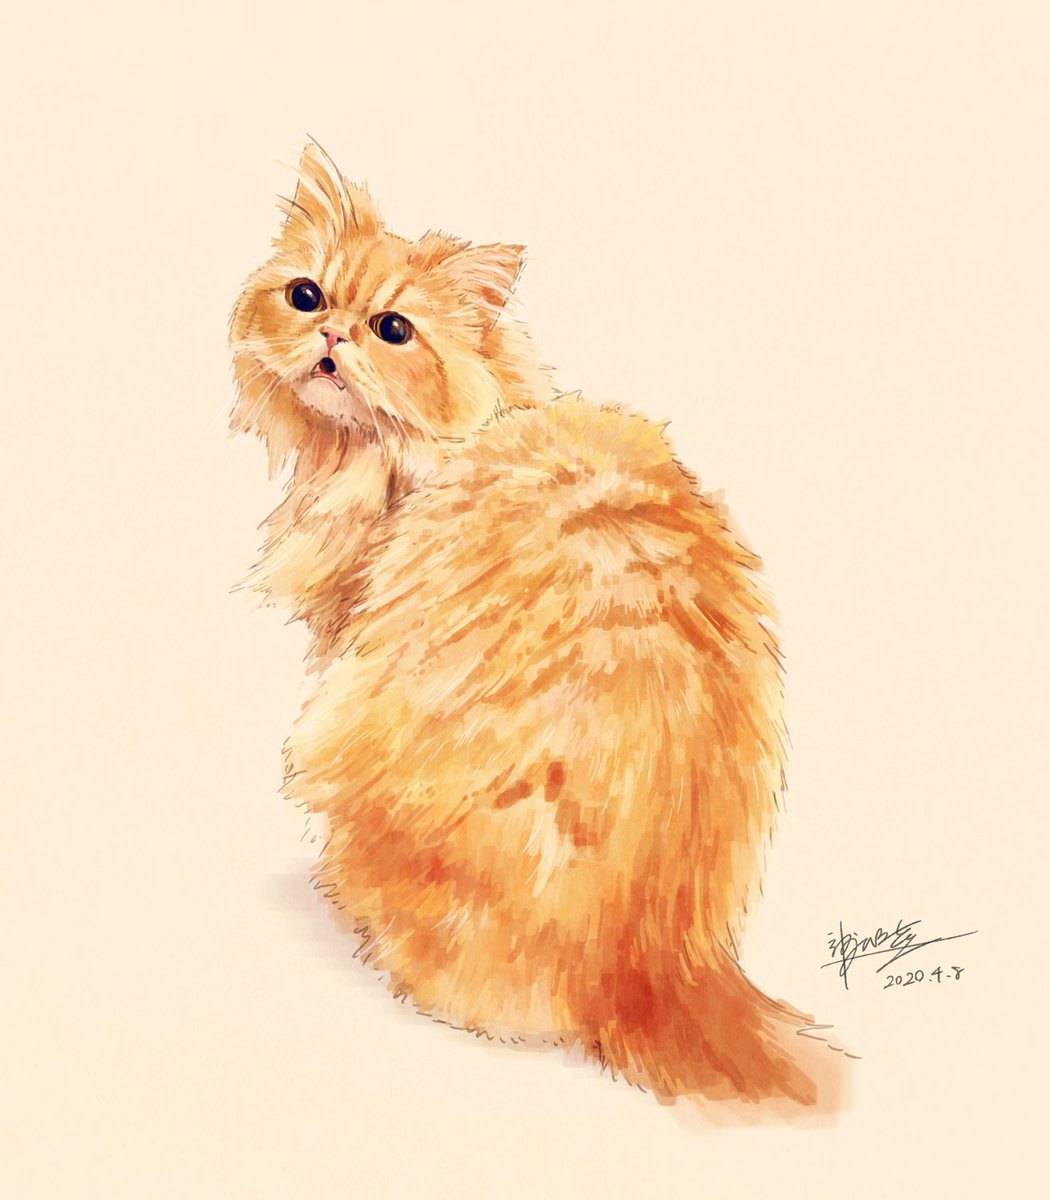 「#世界猫の日 すべてのお猫さまに幸あれぇ!!!」|神永睦のイラスト